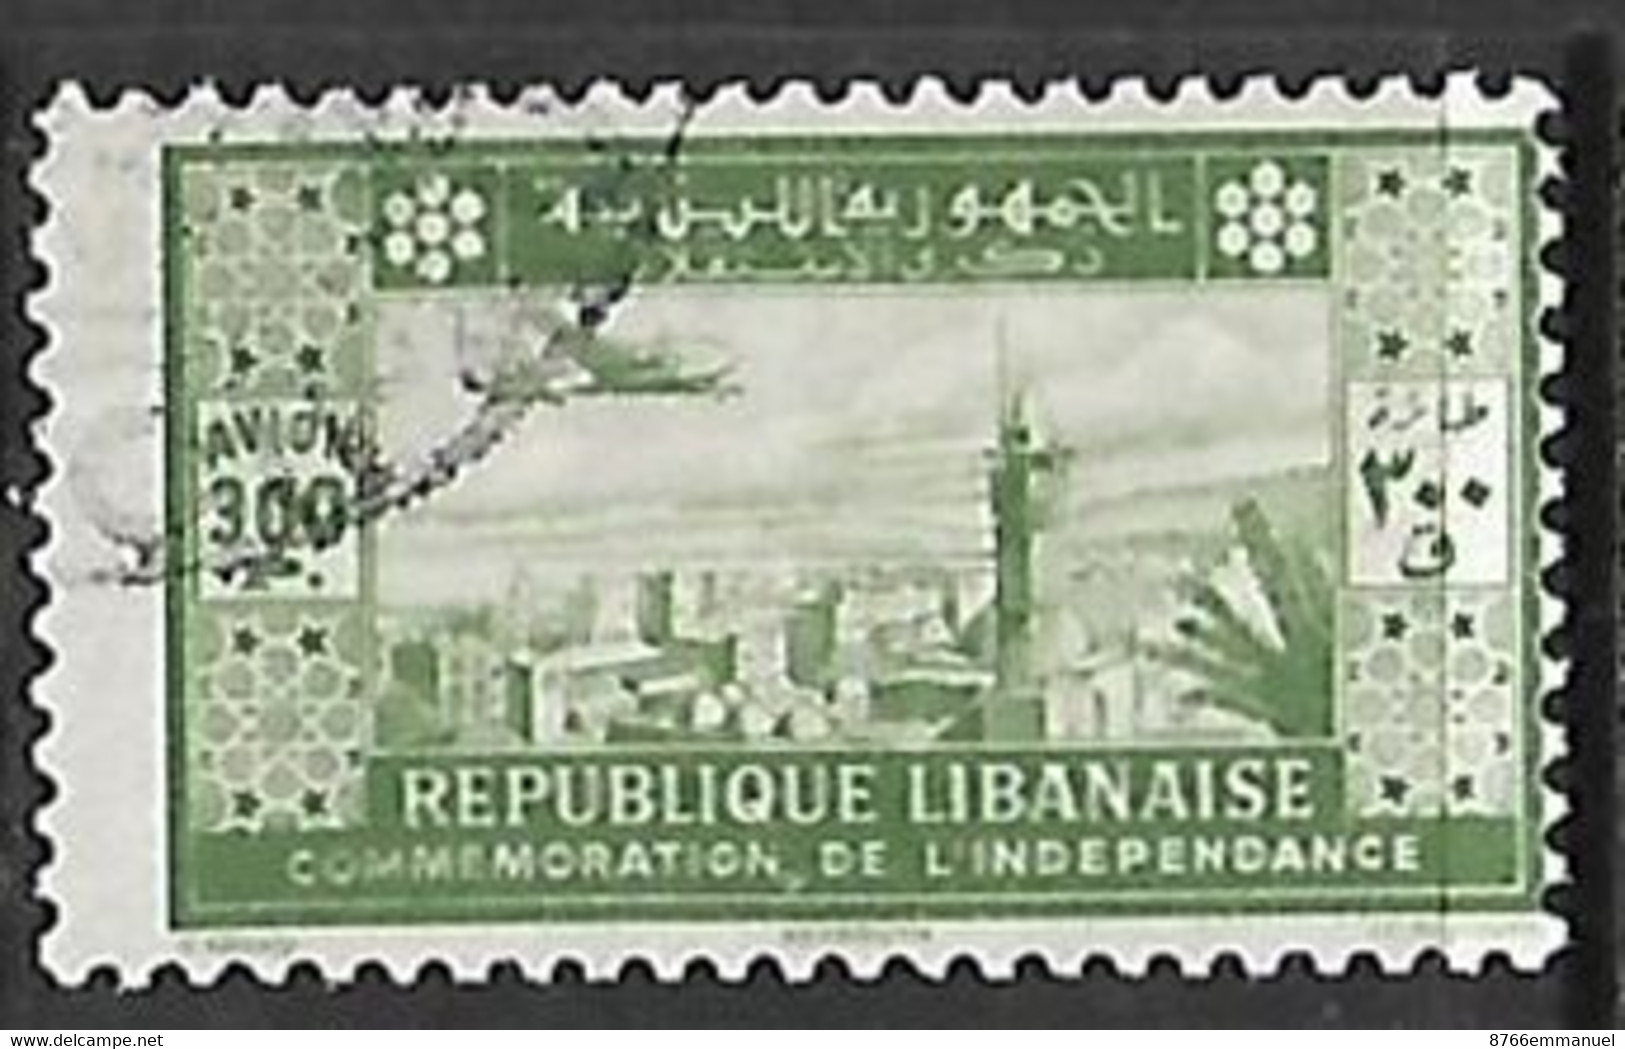 GRAND LIBAN AERIEN N°89 - Luftpost